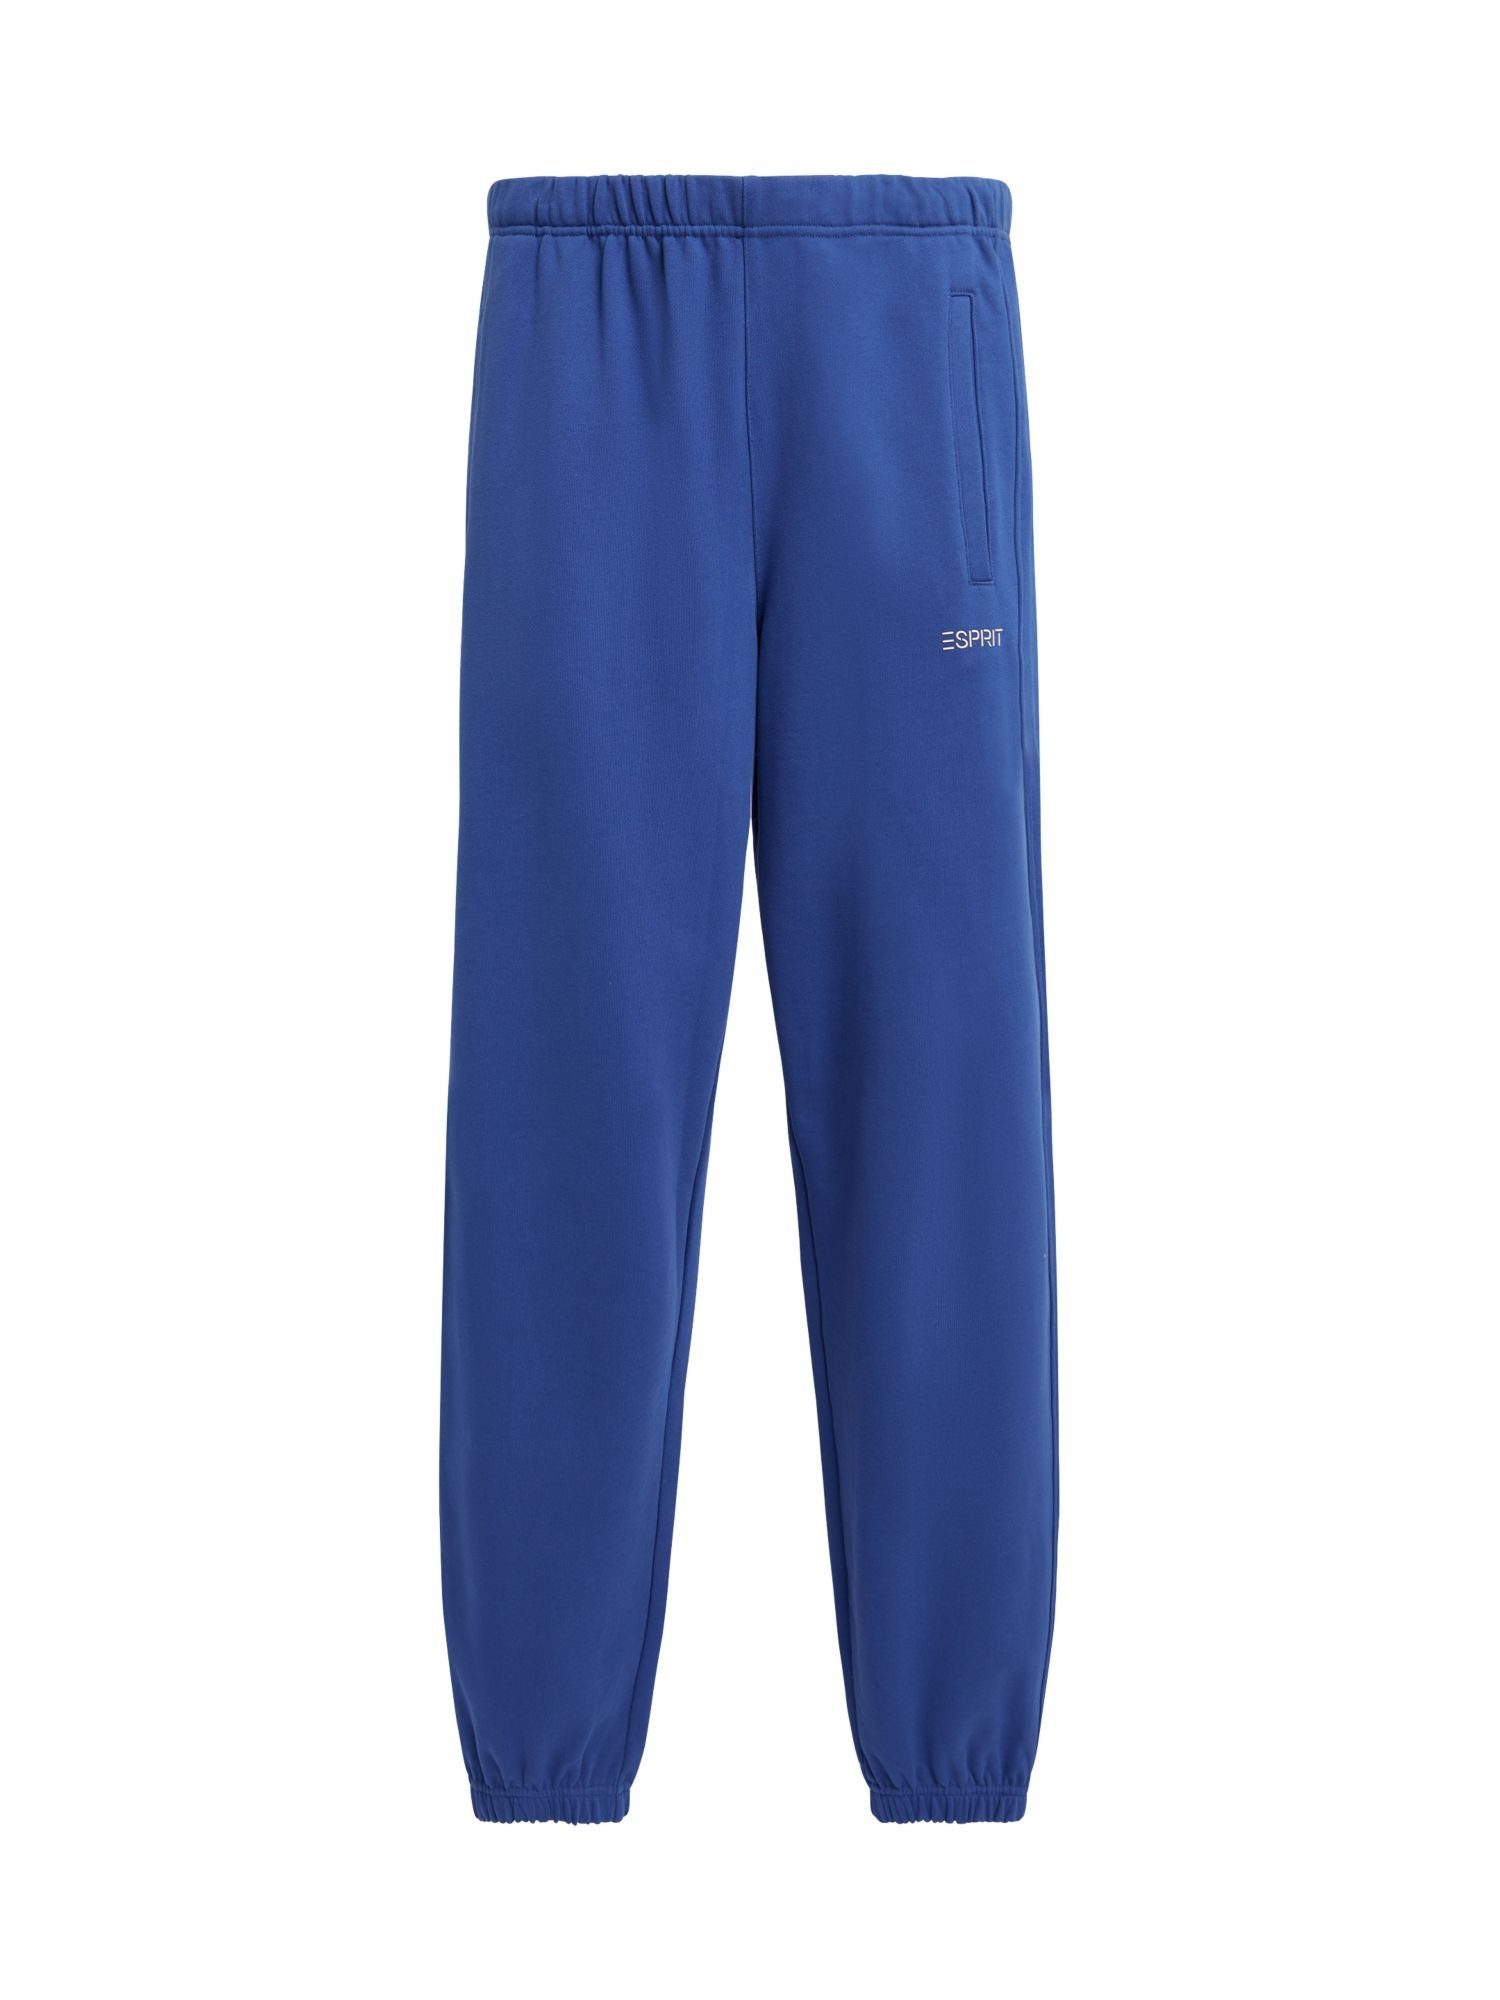 BLUE BRIGHT Pants Jogger Esprit Lässige Logo-Jogger